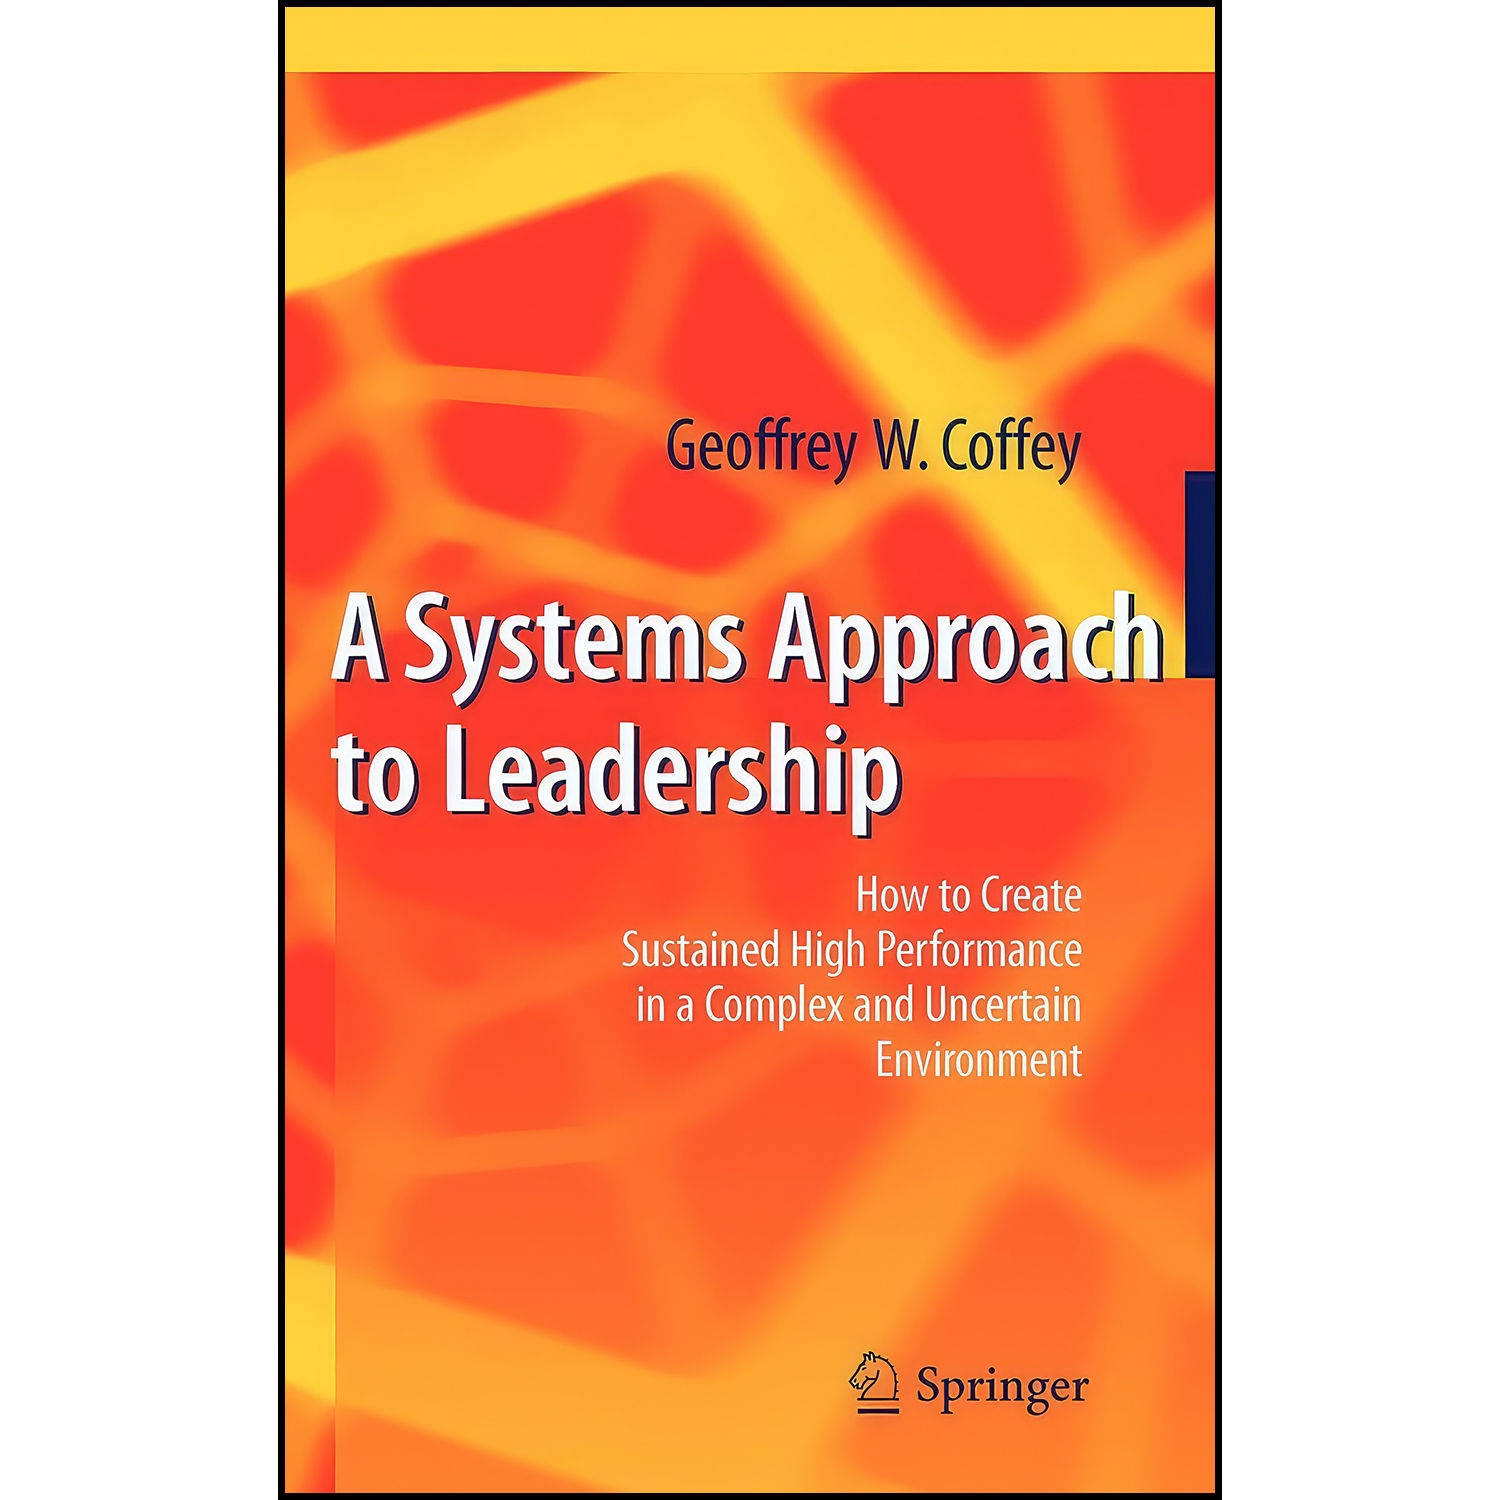 کتاب A Systems Approach to Leadership اثر جمعي از نويسندگان انتشارات Springer